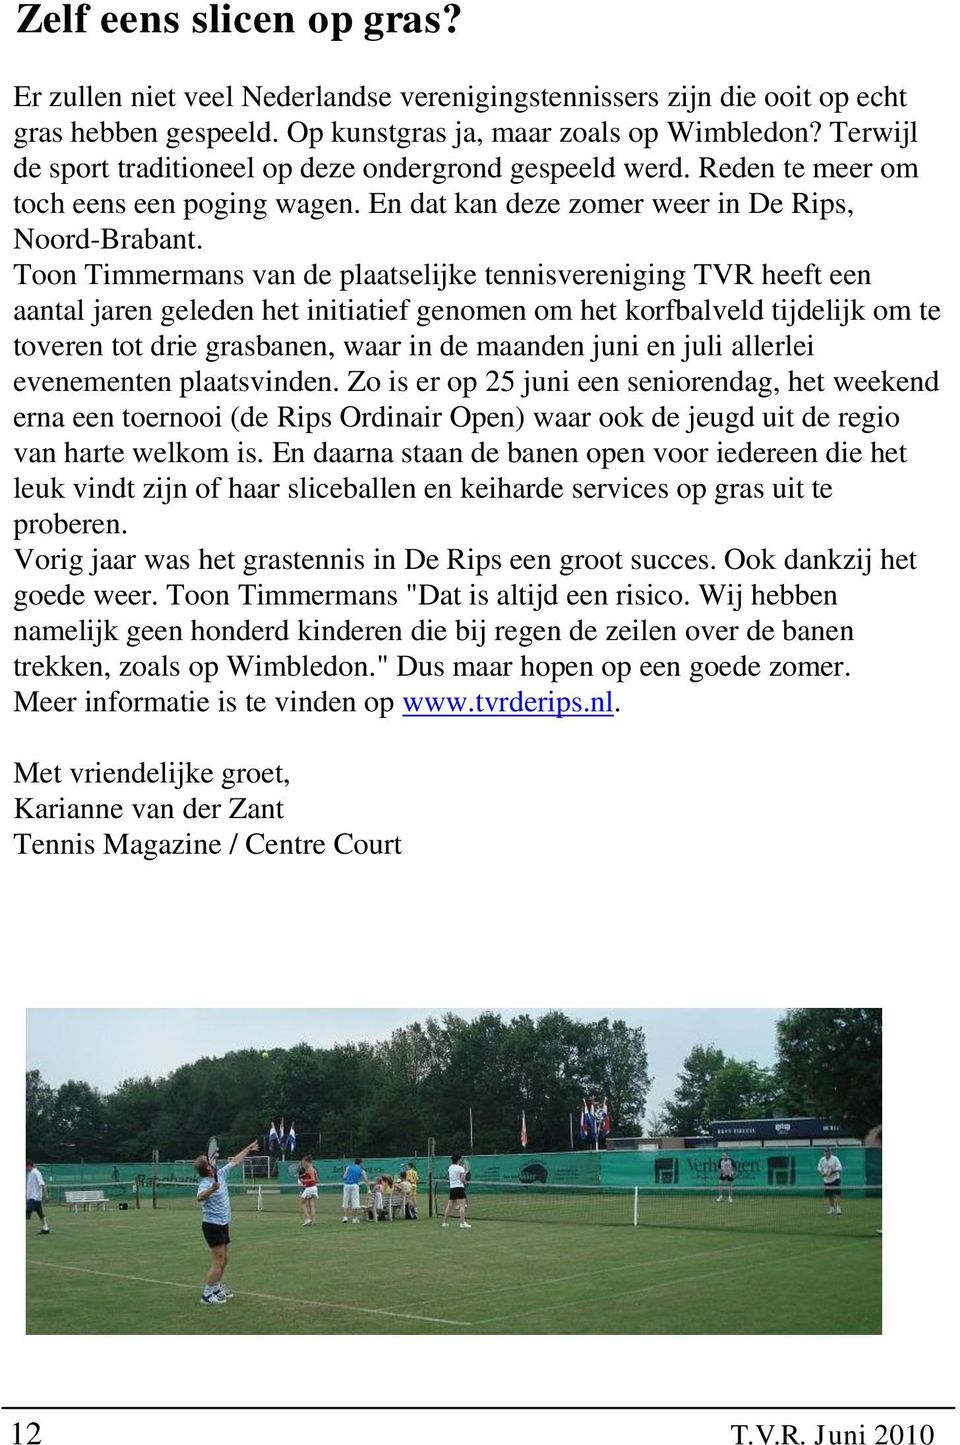 Toon Timmermans van de plaatselijke tennisvereniging TVR heeft een aantal jaren geleden het initiatief genomen om het korfbalveld tijdelijk om te toveren tot drie grasbanen, waar in de maanden juni